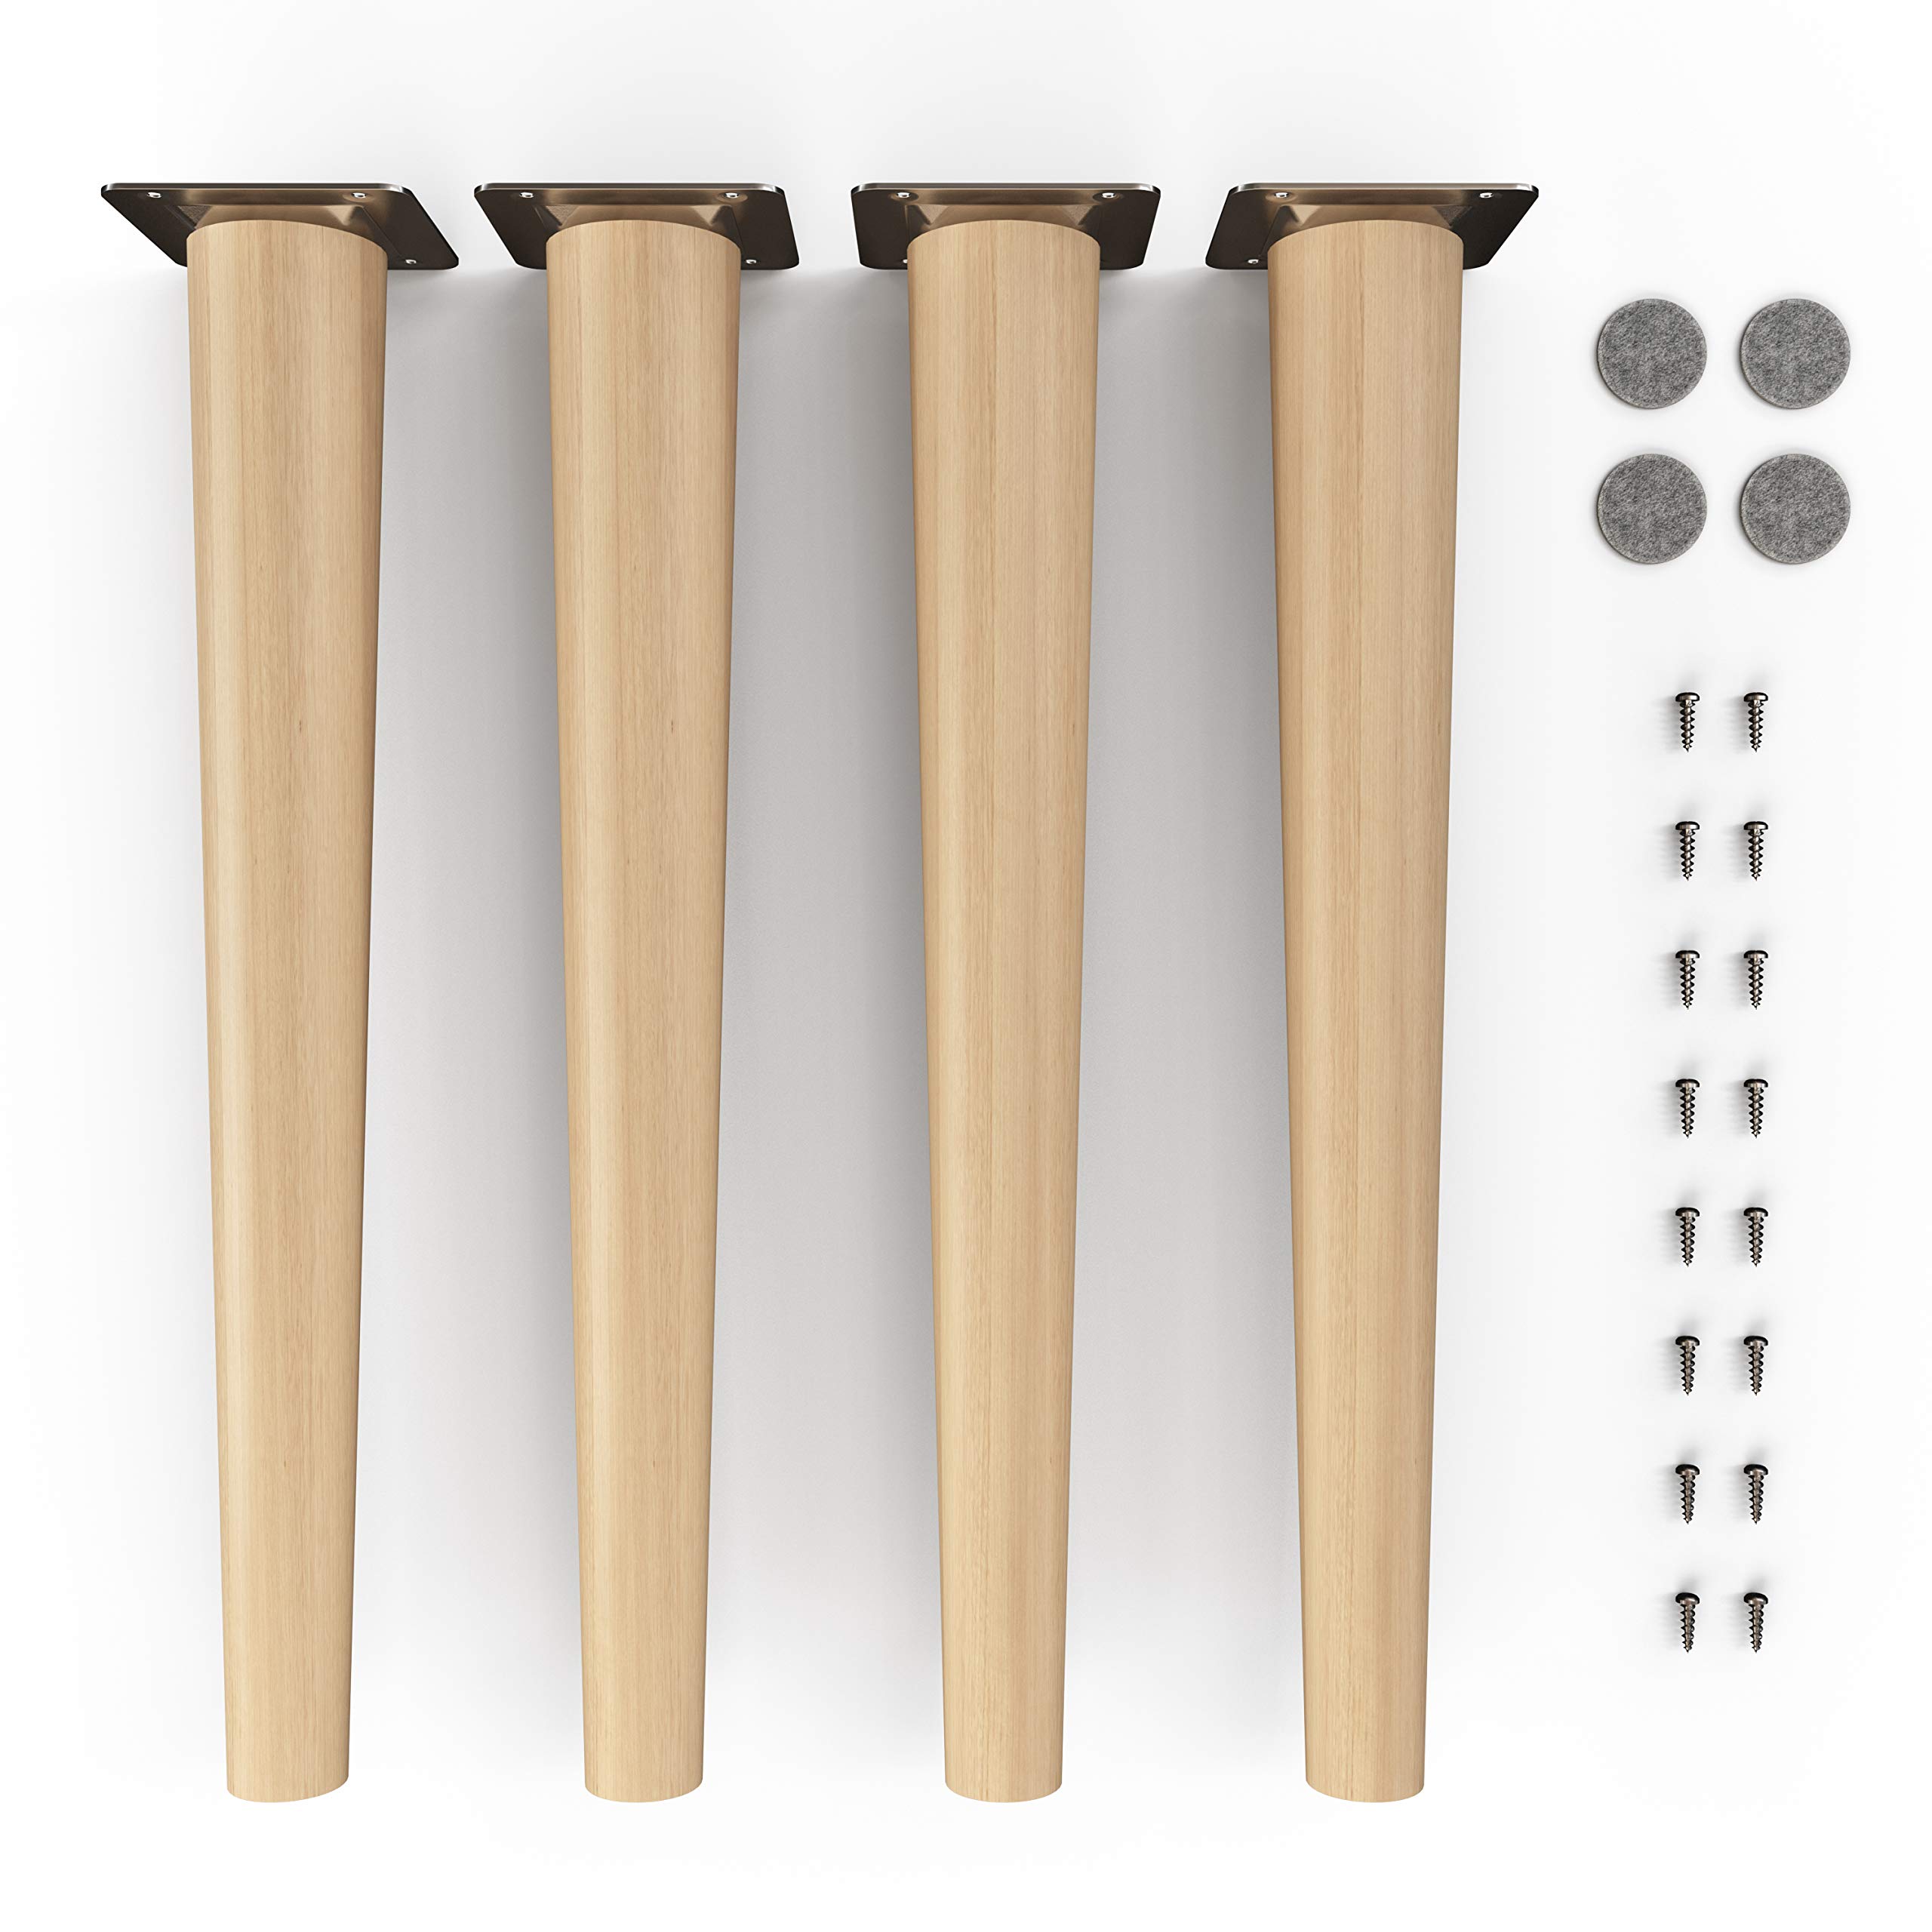 sossai® Holz-Möbelfüße - Clif Round | Öl-Finish | Höhe: 45 cm | HMF1 | rund, konisch (gerade Ausführung) | Material: Massivholz (Buche) | für Stühle, Tische, Schränke etc.